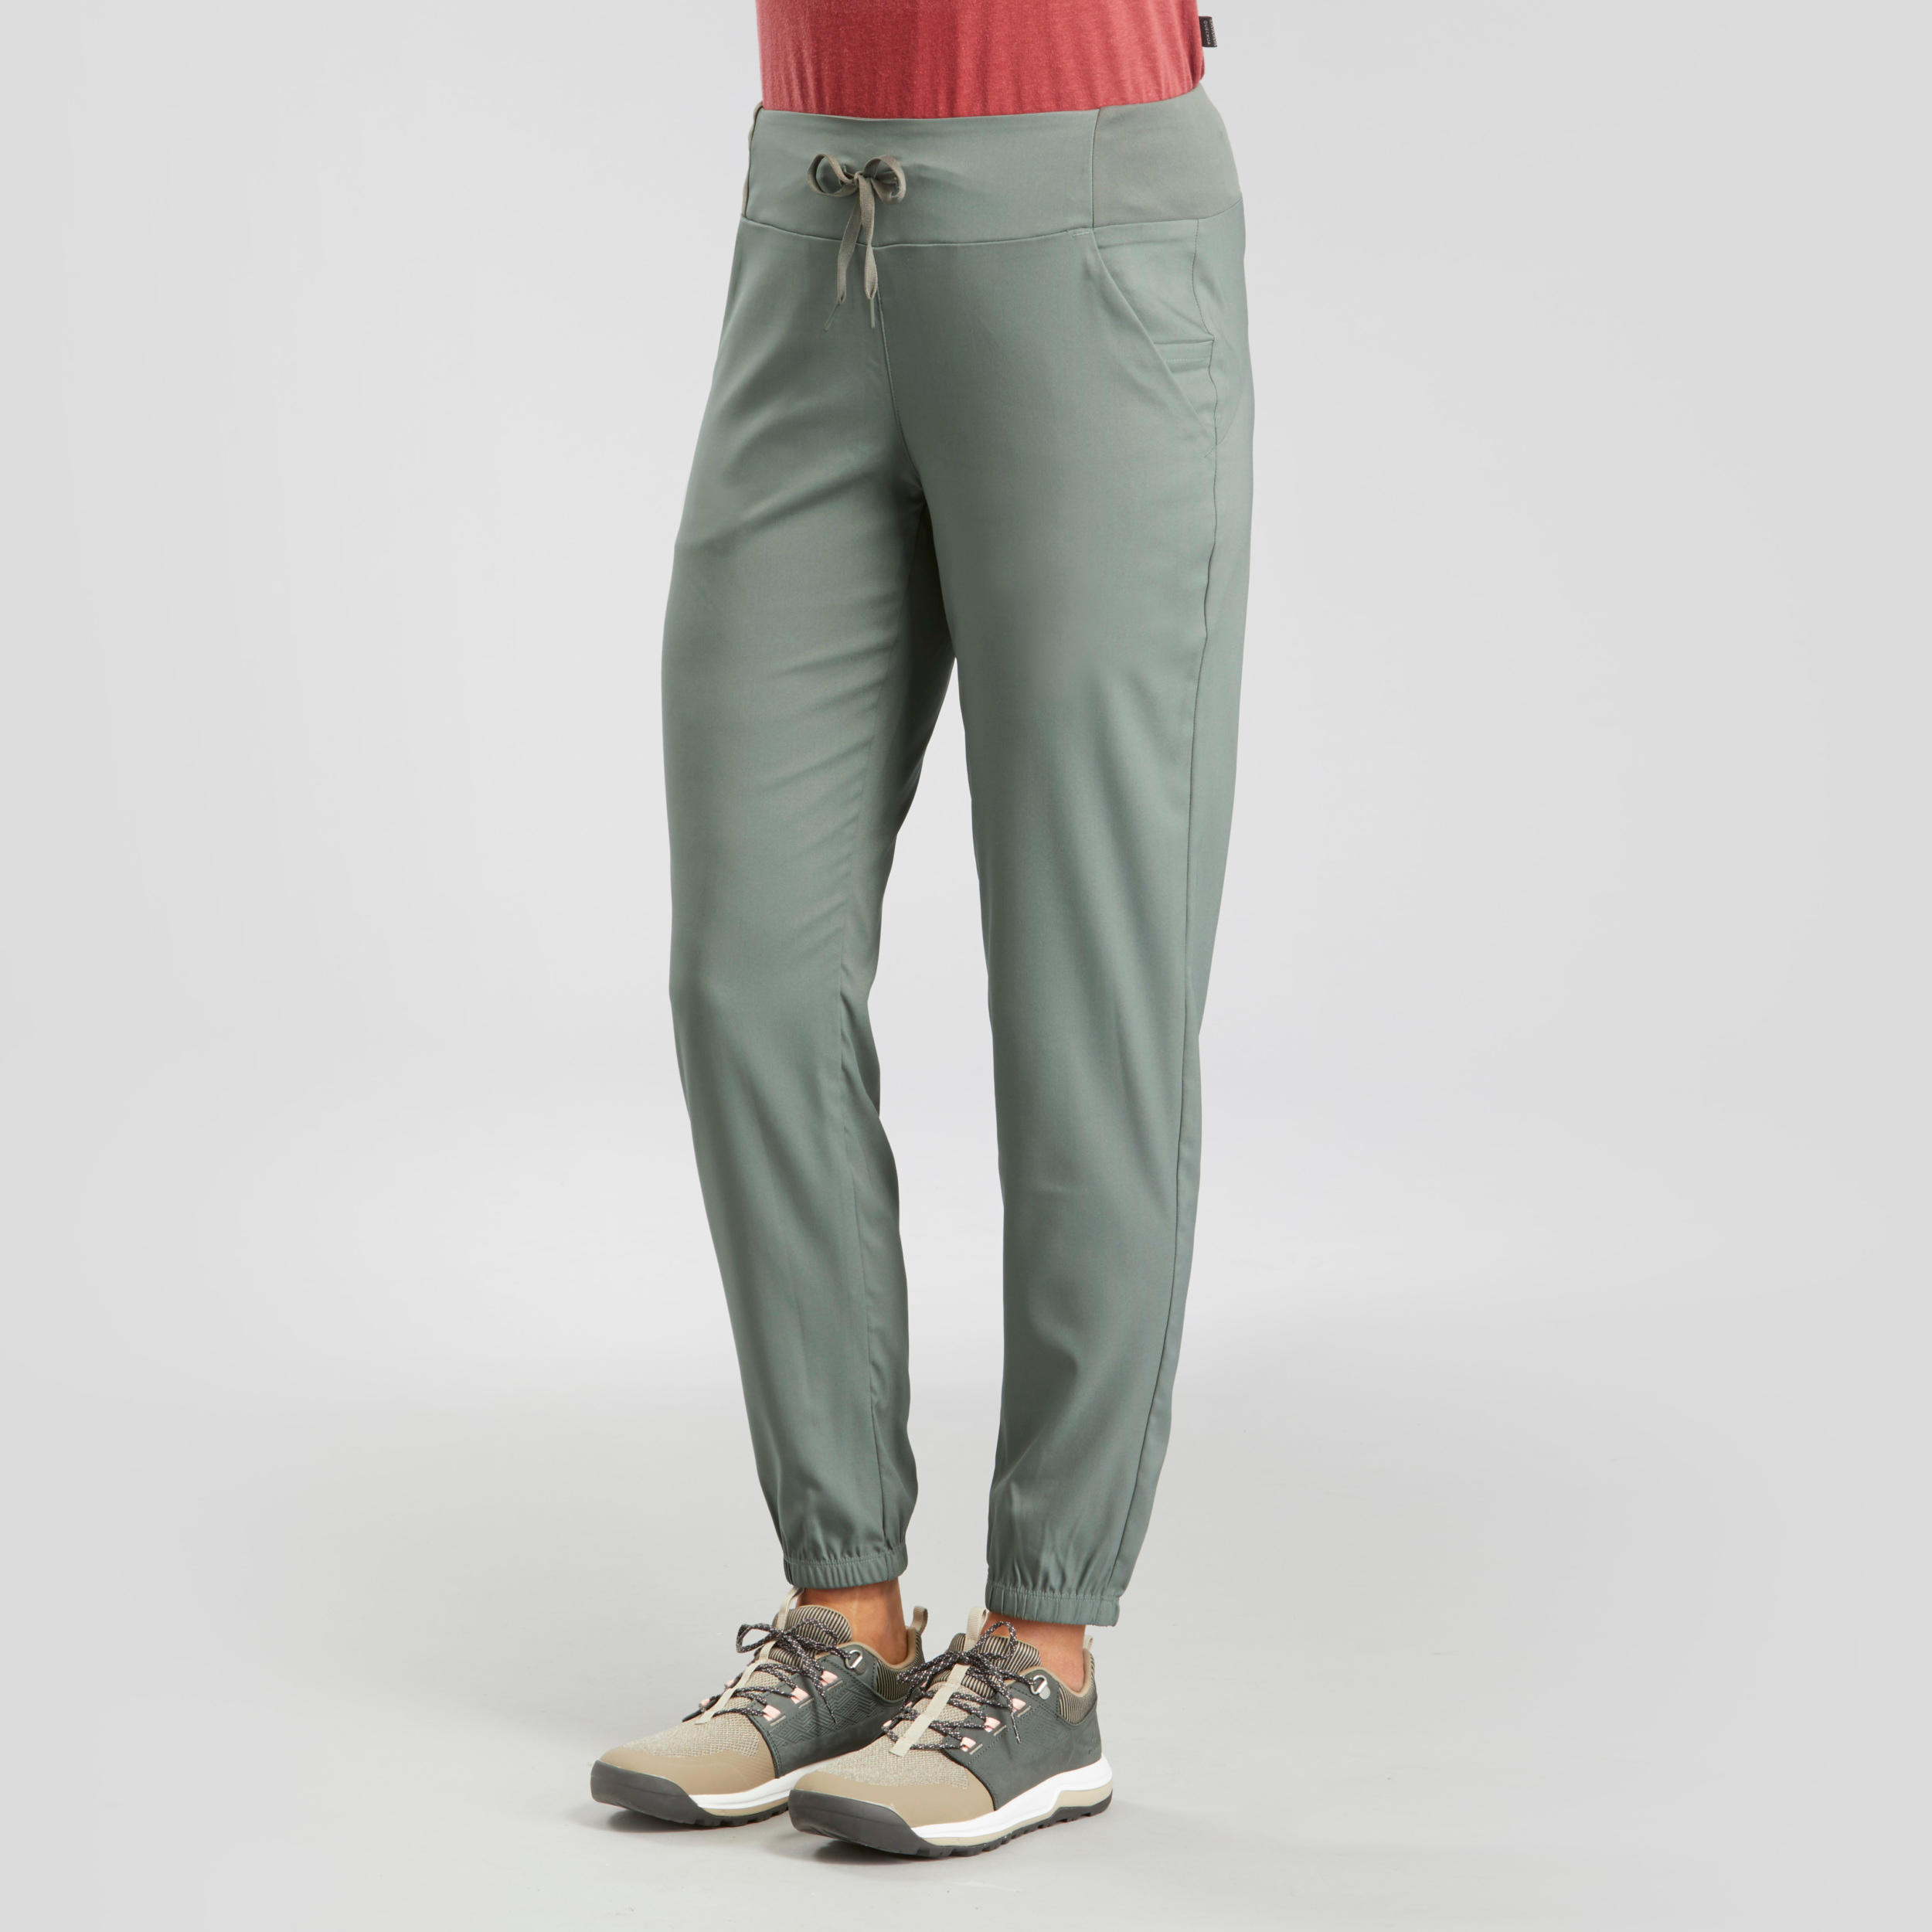 Buy Men Polyester SlimFit Gym Track Pants  Grey online  Looksgudin